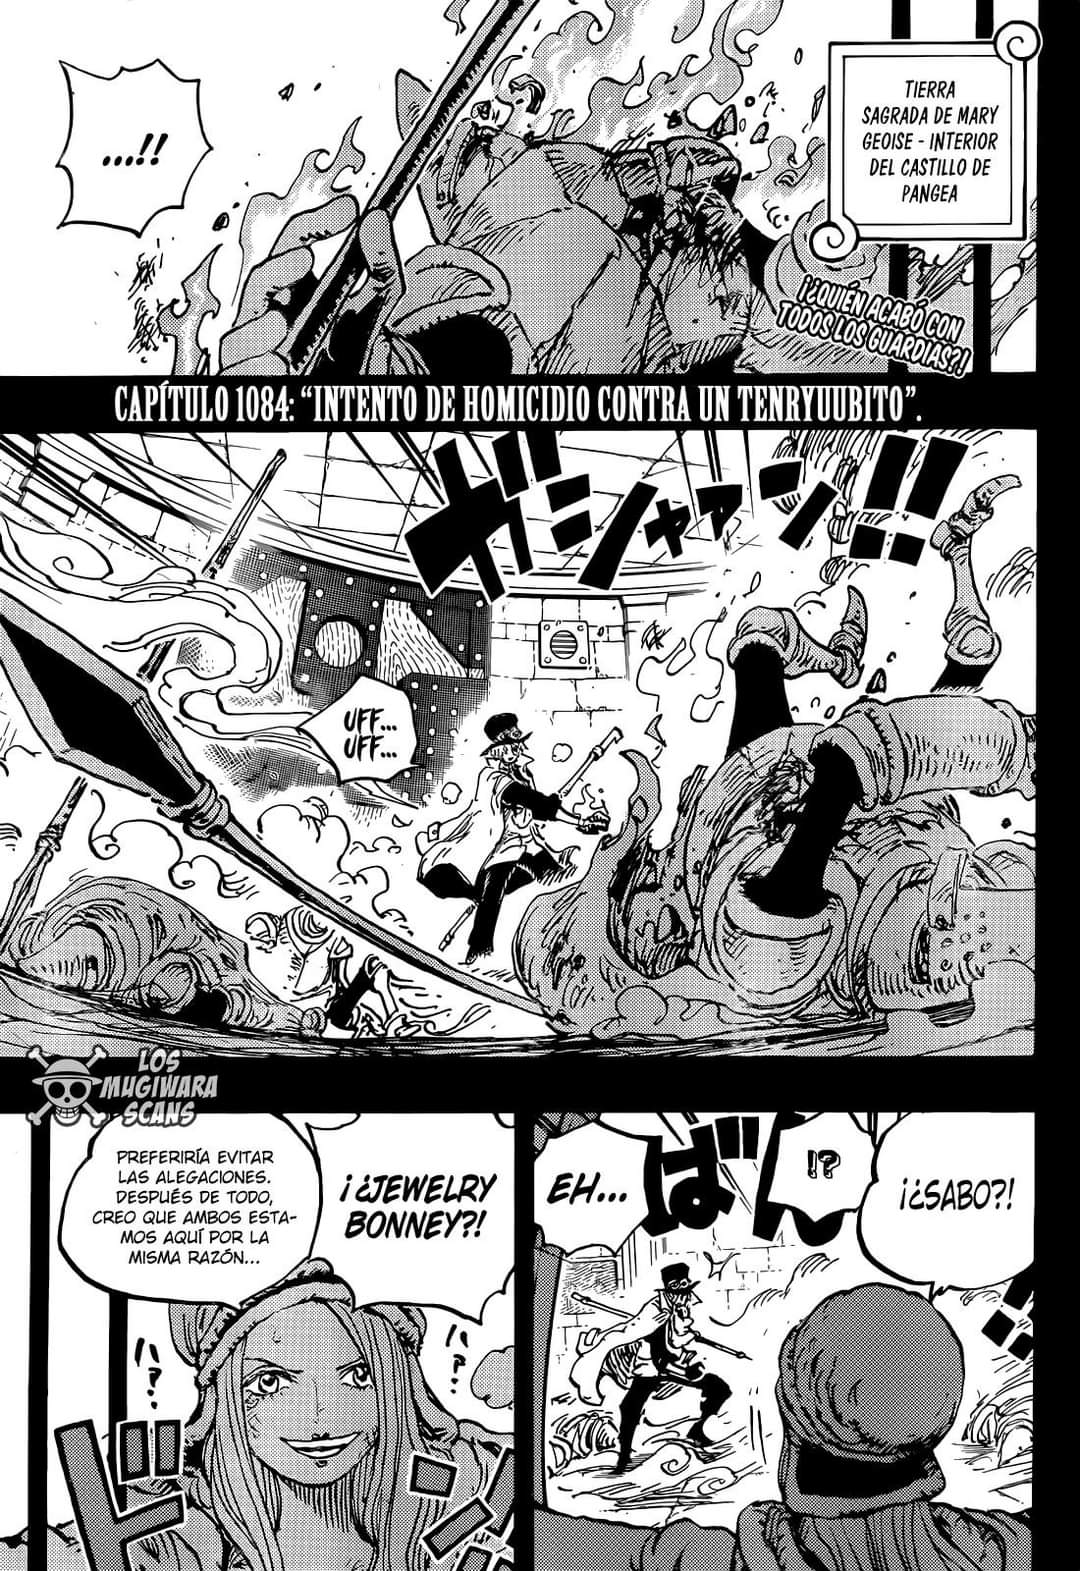 One Piece 1084: Tudo Sobre O Capítulo Do Mangá, Lançamento E Onde Ler Online